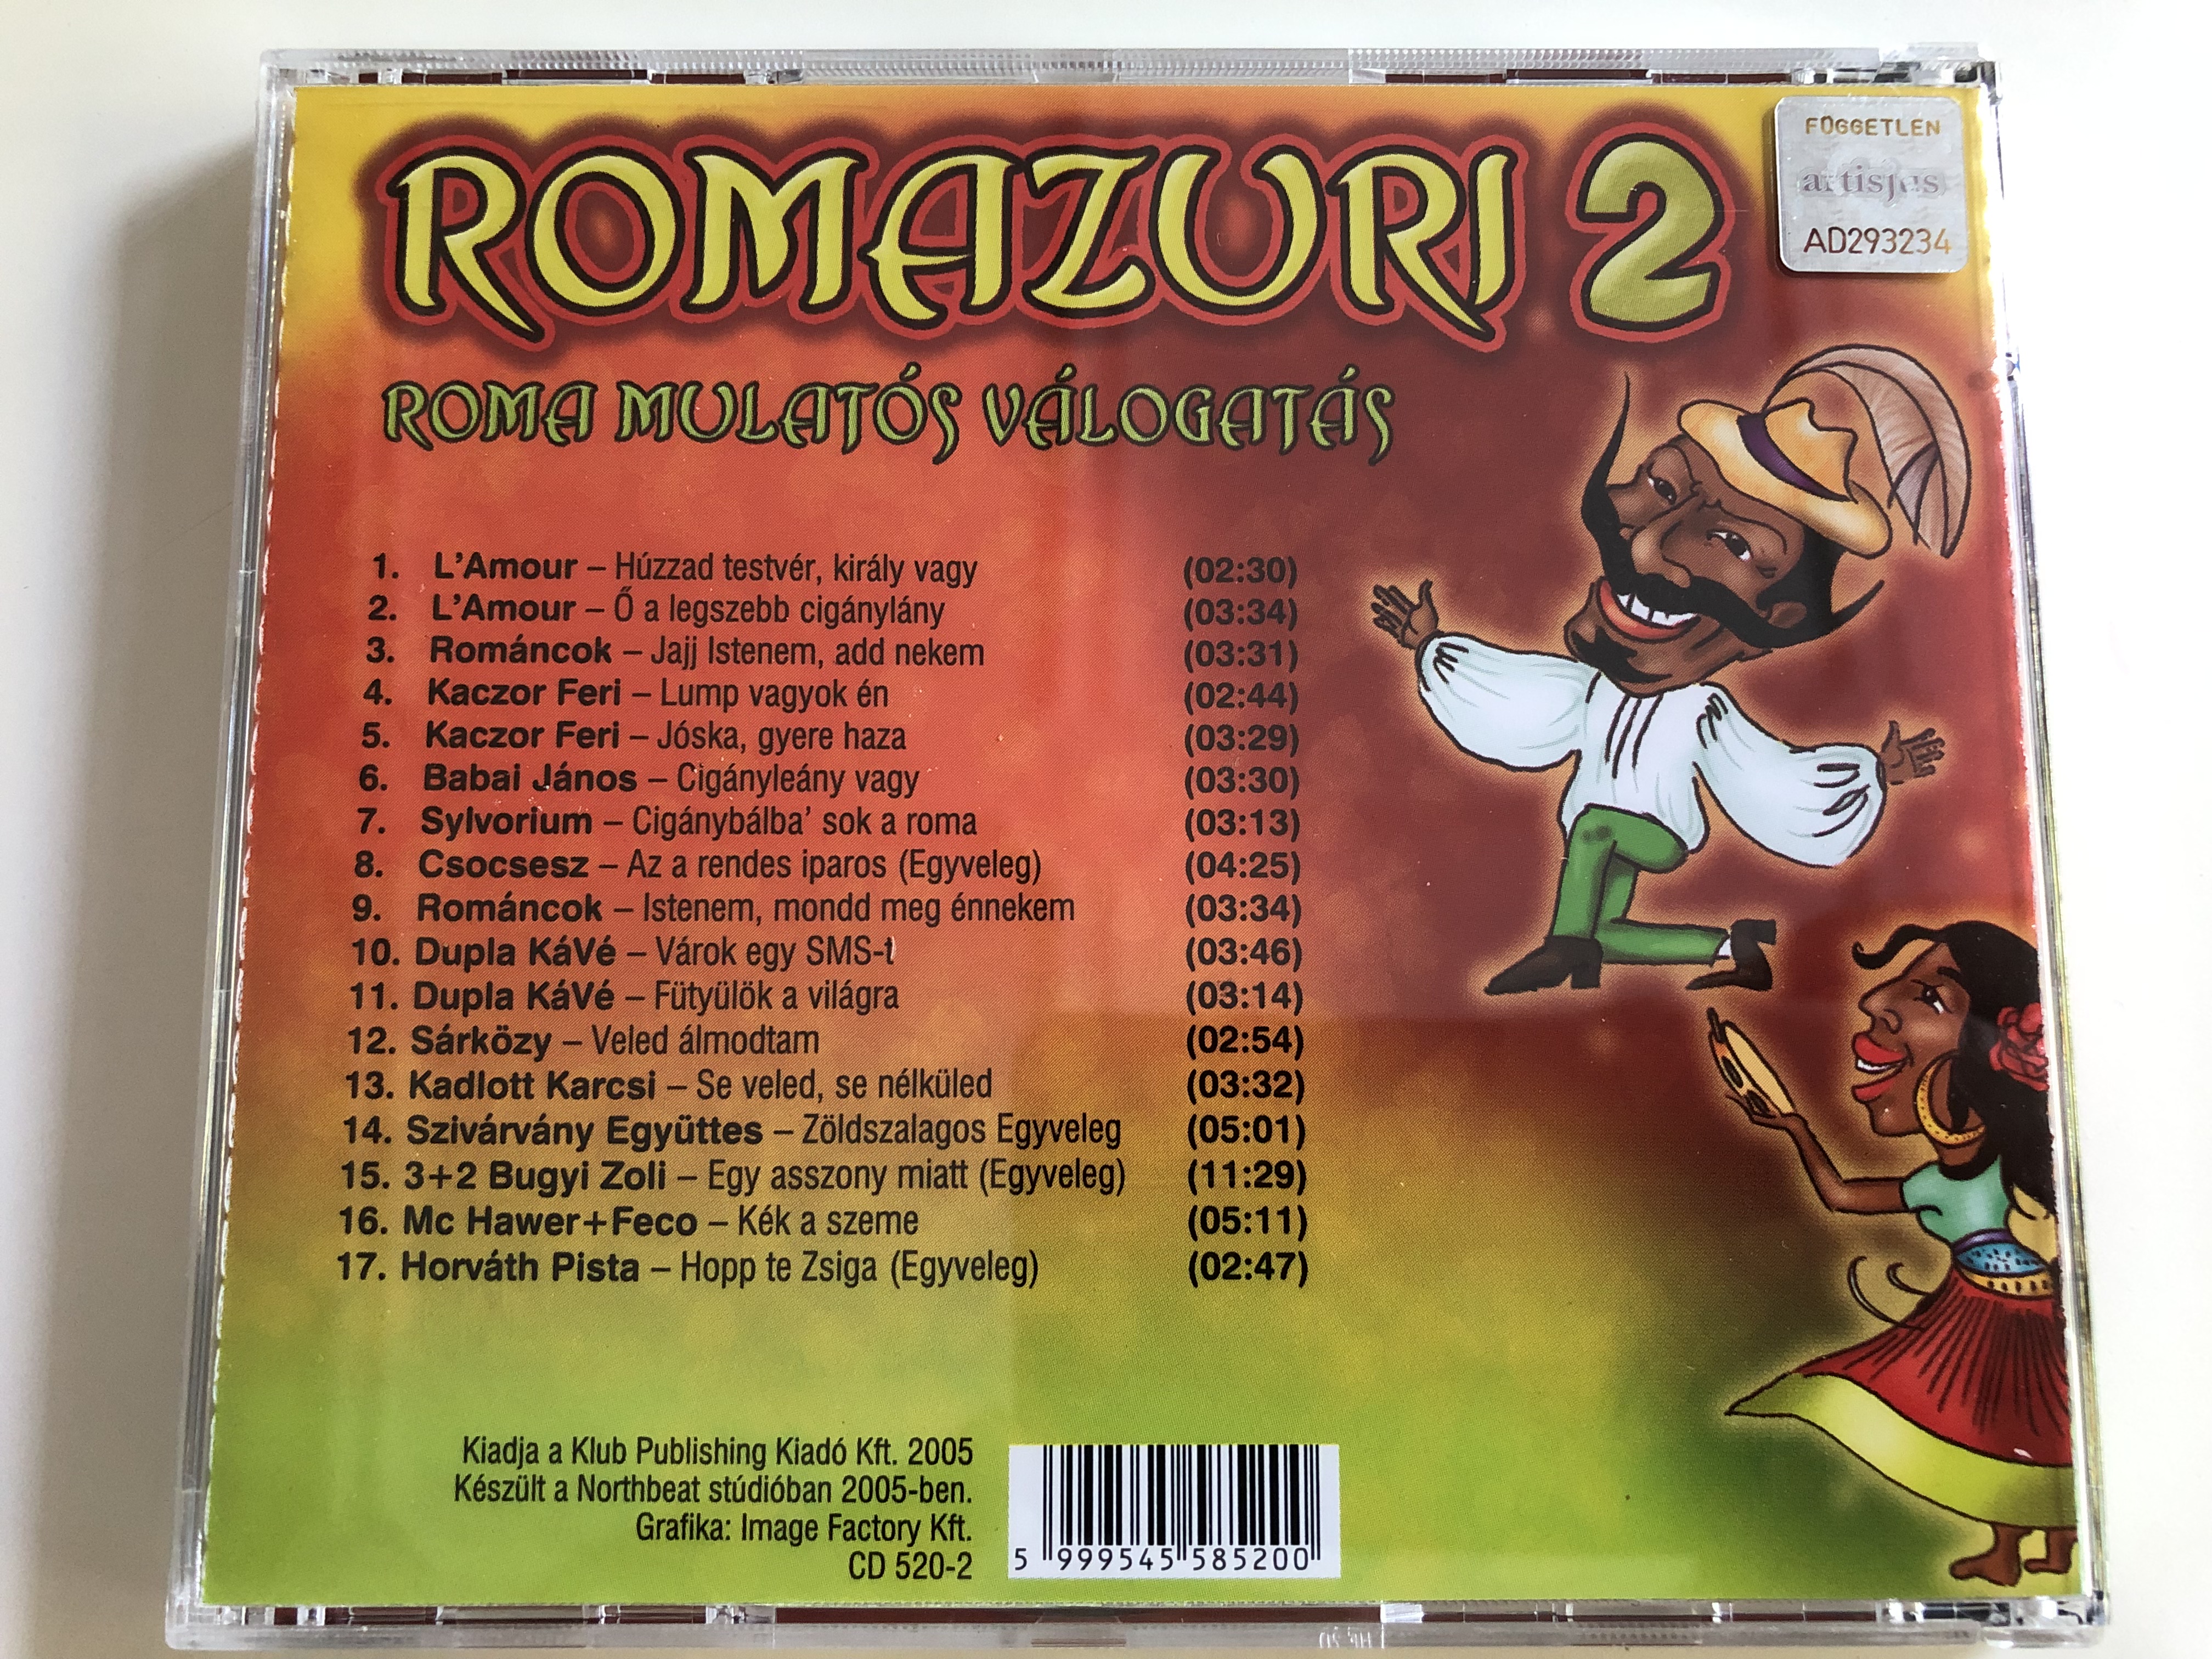 romazuri-2-roma-mulat-s-v-logat-s-dupla-k-v-3-2-mc-hawer-horv-th-pista-sziv-rv-ny-egy-ttes-s-rk-zy-sylvorium-audio-cd-2005-cd-520-2-5-.jpg